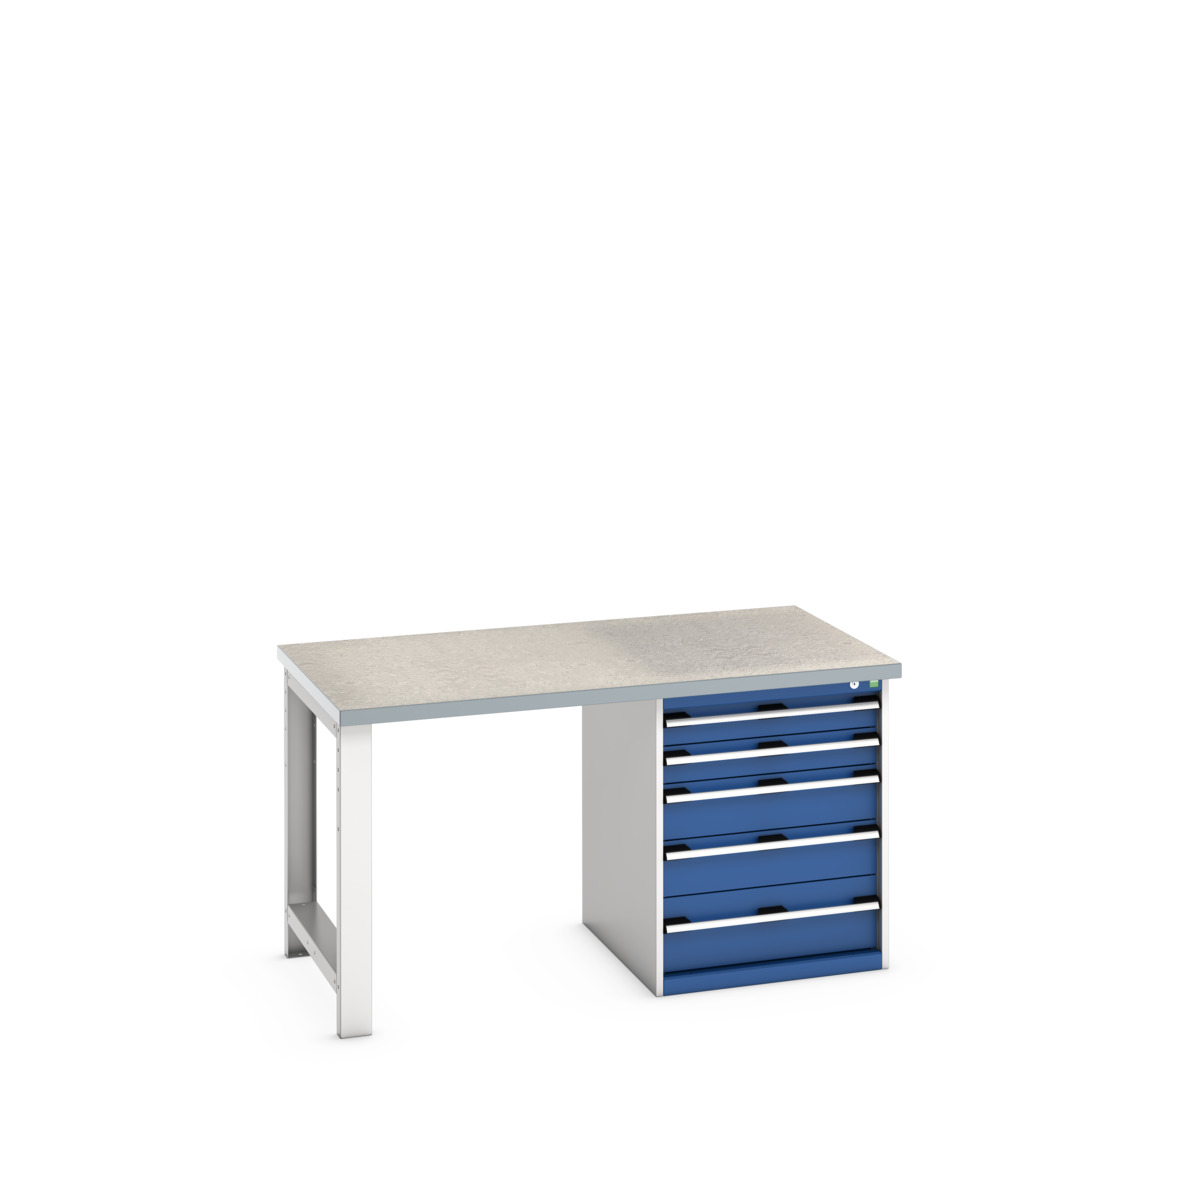 41004110.11V - cubio pedestal bench (lino)